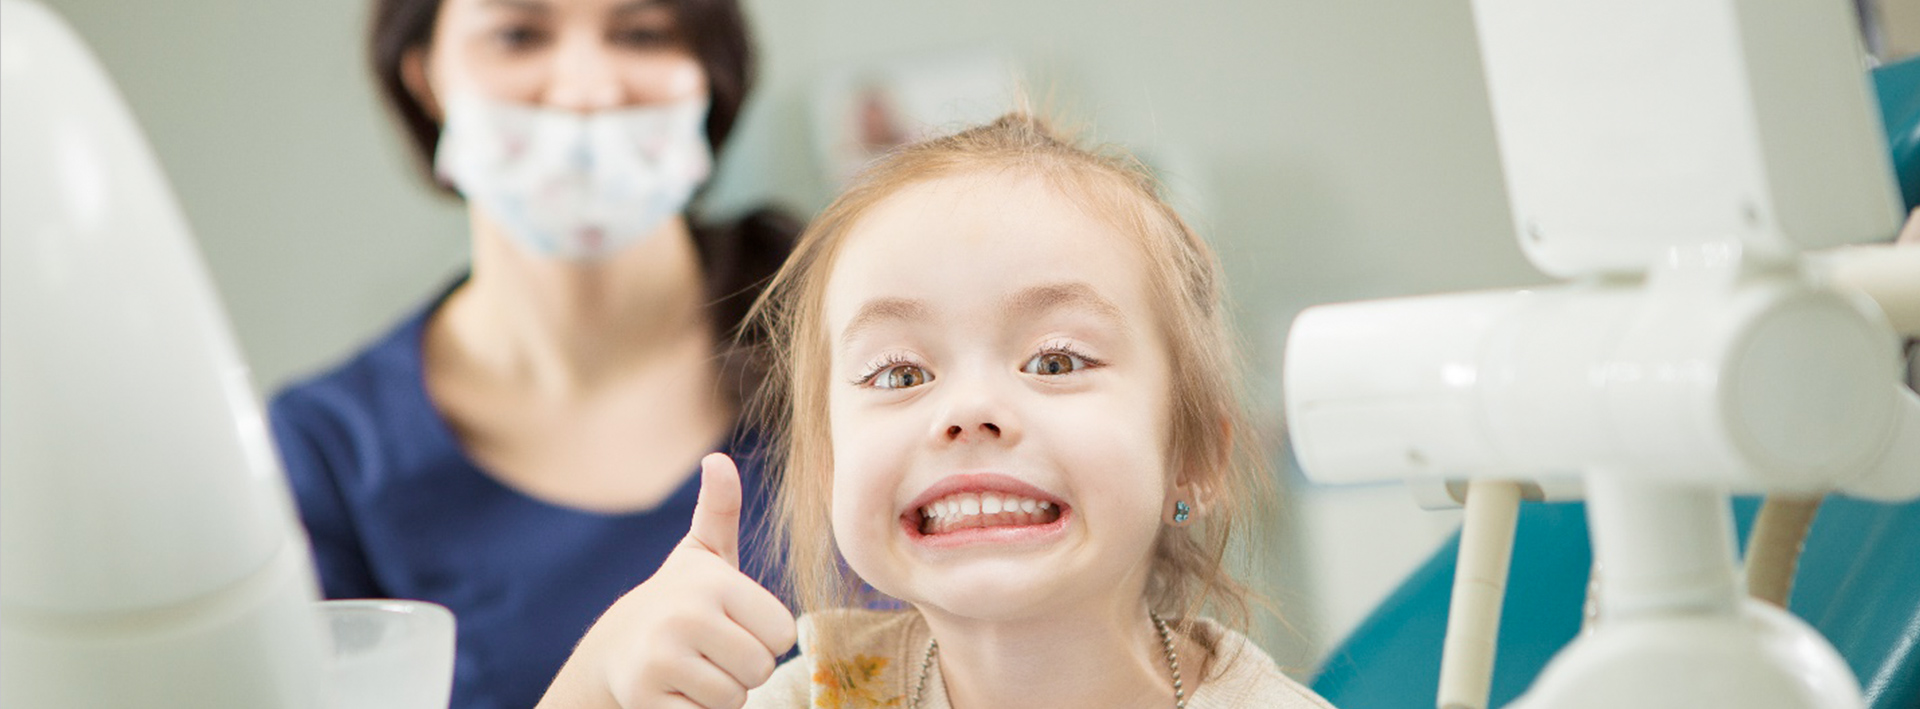 детская стоматология город томск